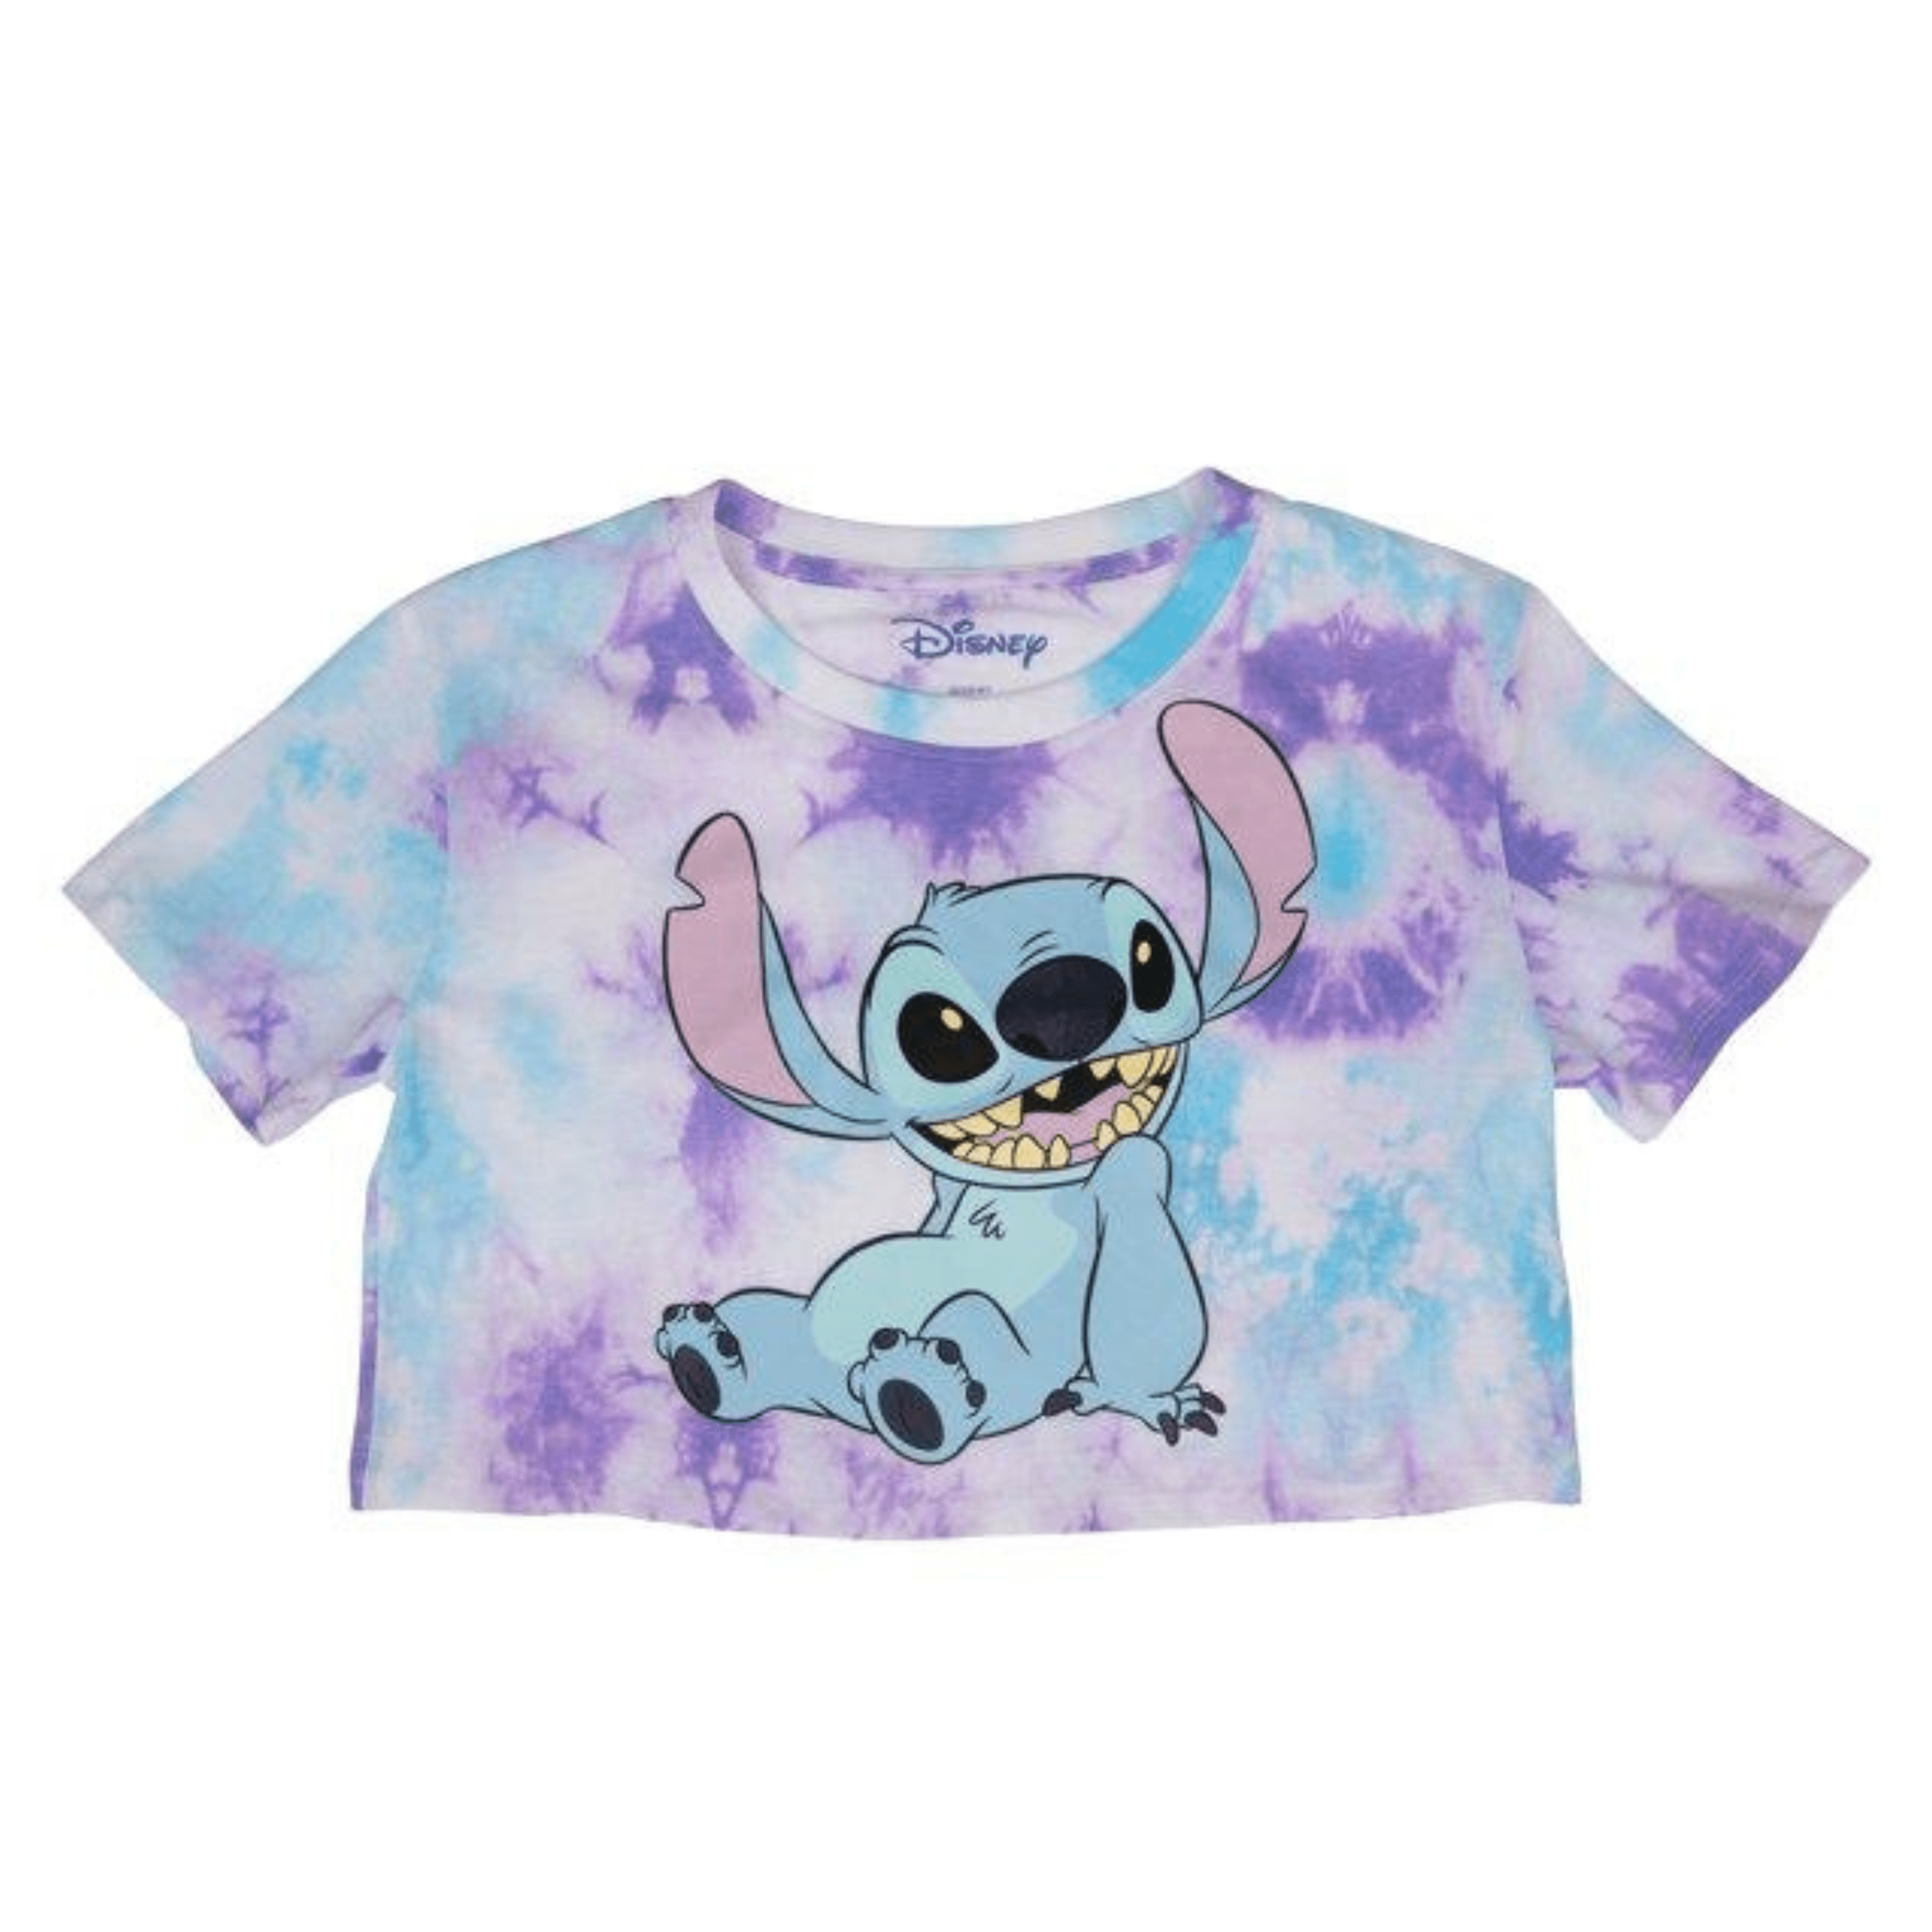 Junior Stitch Tie Dye Crop Top, Disney Shirt for Girls, Blue,